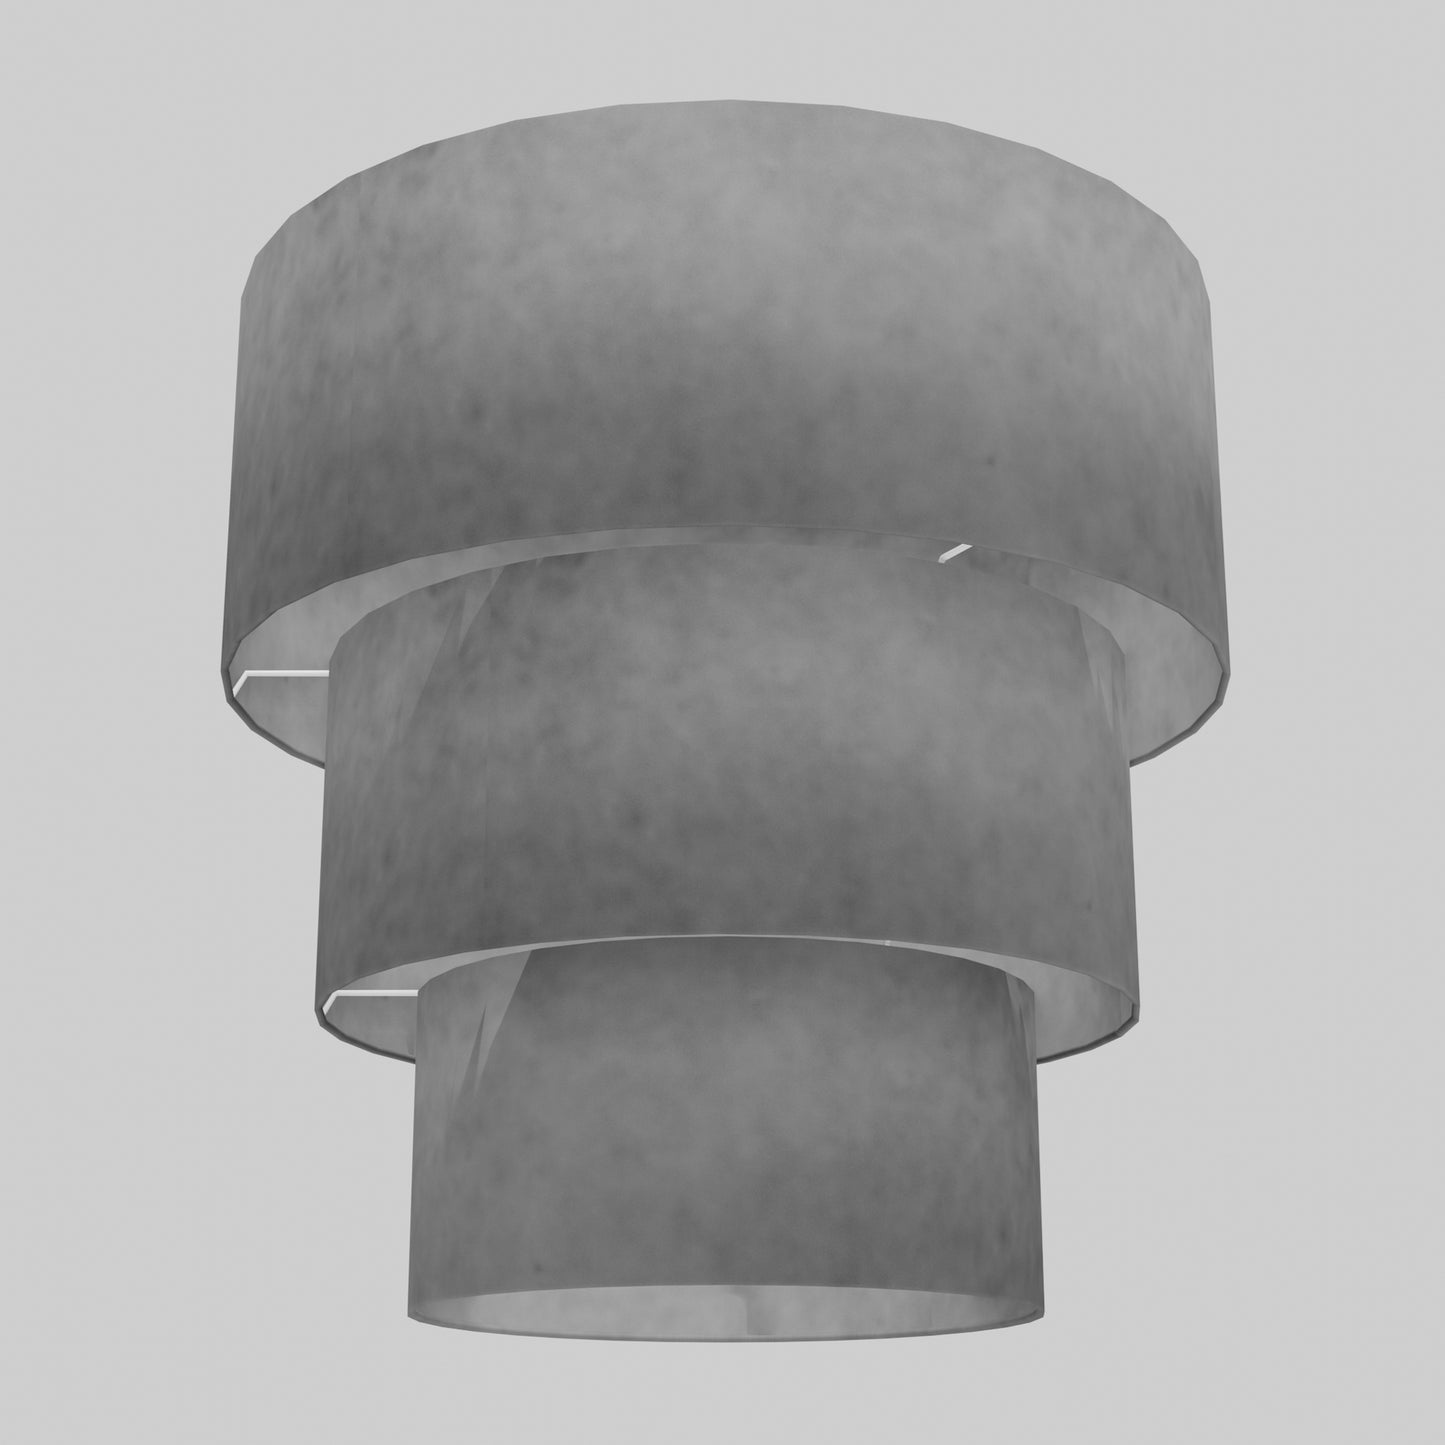 3 Tier Lamp Shade - P53 - Pewter Grey, 50cm x 20cm, 40cm x 17.5cm & 30cm x 15cm